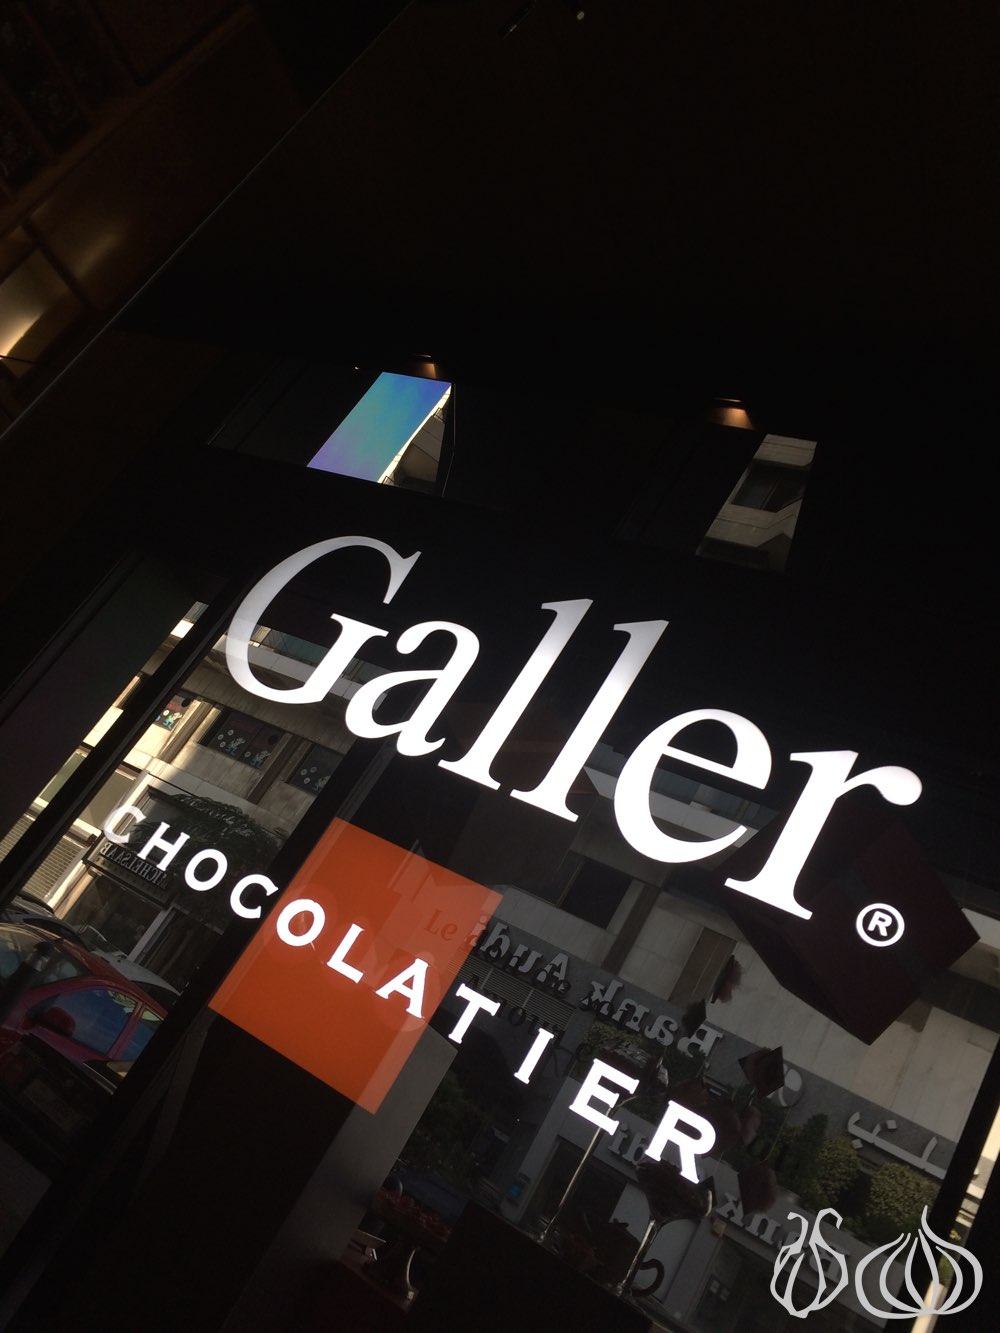 galler-chocolate-cafe-restaurant-zalka212014-10-29-06-33-42